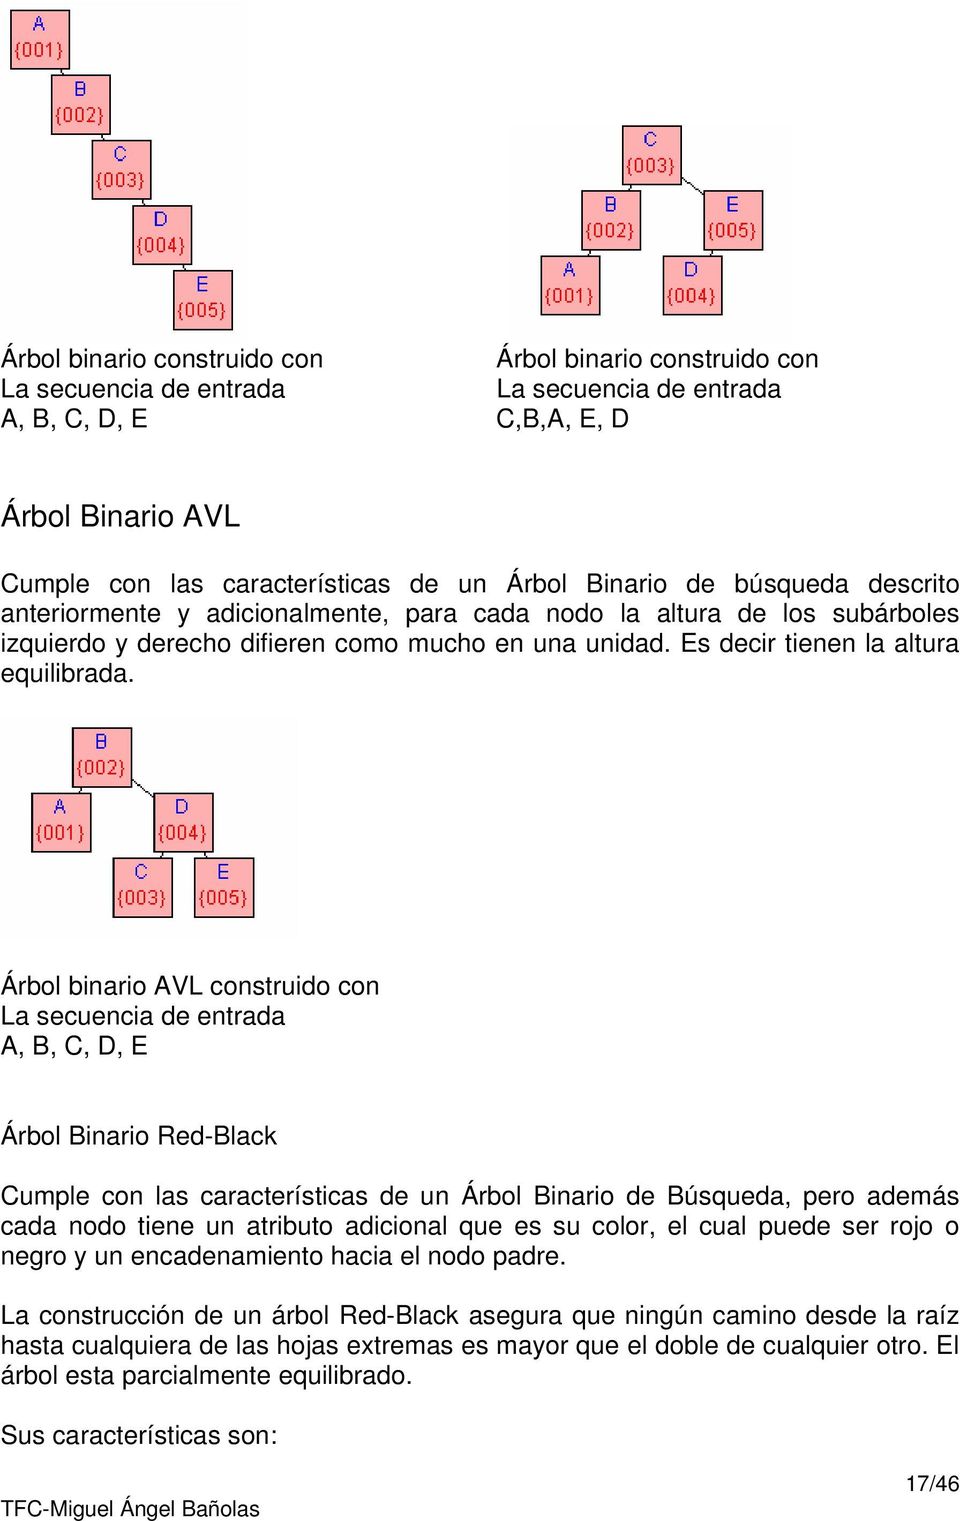 Árbol binario AVL construido con La secuencia de entrada A, B, C, D, E Árbol Binario Red-Black Cumple con las características de un Árbol Binario de Búsqueda, pero además cada nodo tiene un atributo